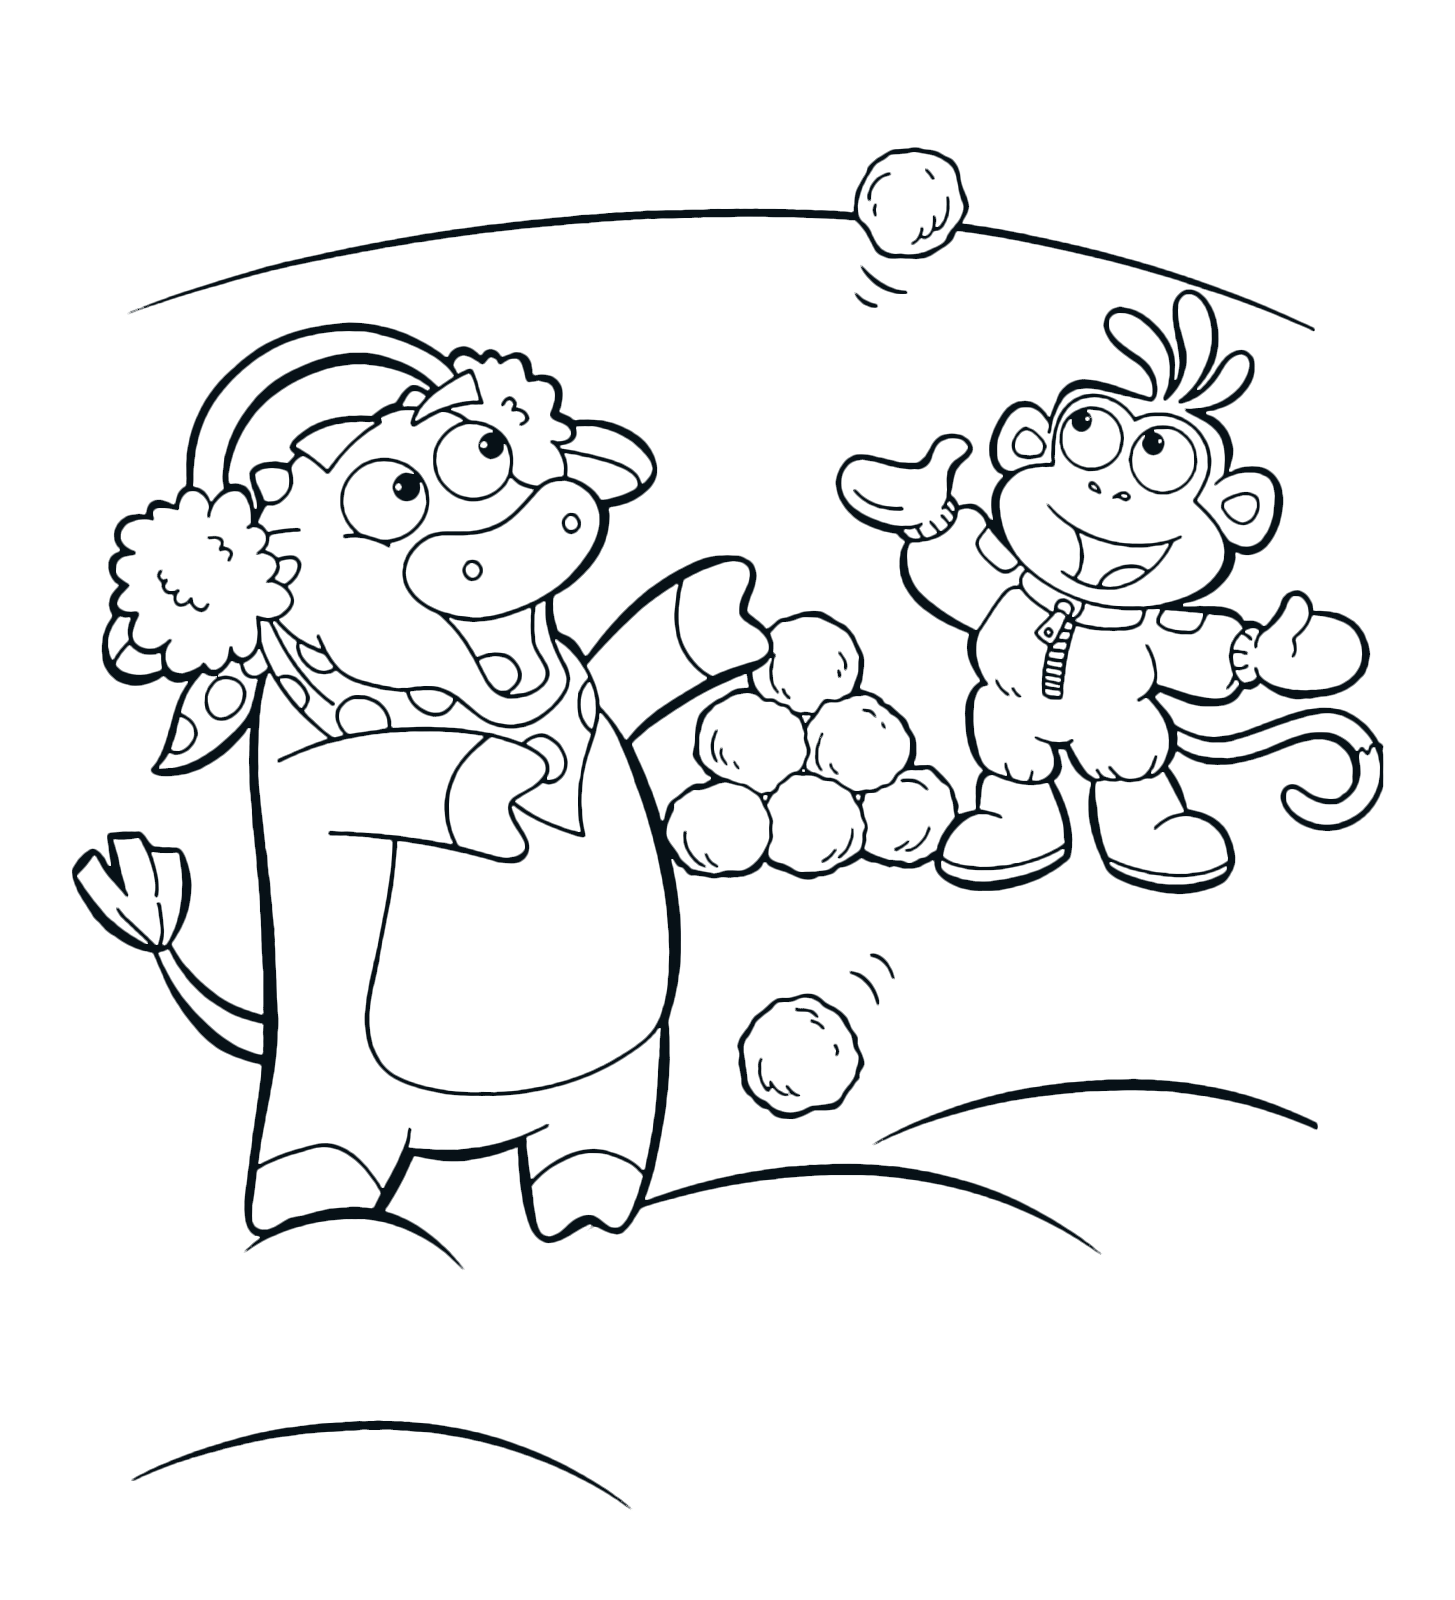 Dora l'esploratrice - Boots la scimmietta e Benny il toro giocano con le palle di neve